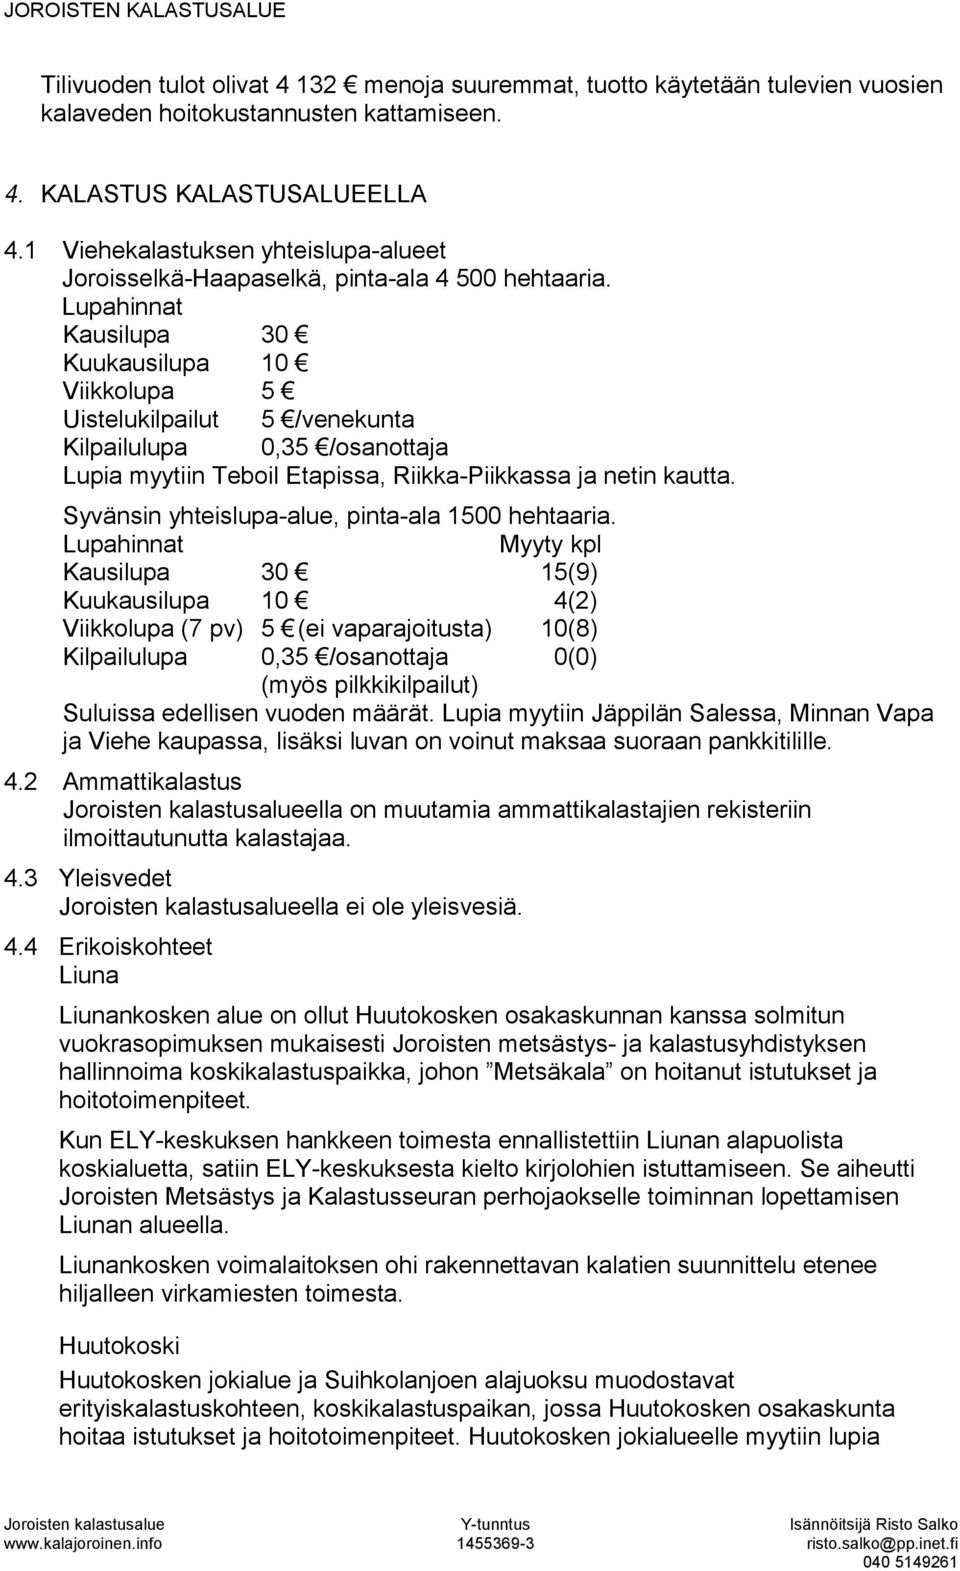 Lupahinnat Kausilupa 30 Kuukausilupa 10 Viikkolupa 5 Uistelukilpailut 5 /venekunta Kilpailulupa 0,35 /osanottaja Lupia myytiin Teboil Etapissa, Riikka-Piikkassa ja netin kautta.